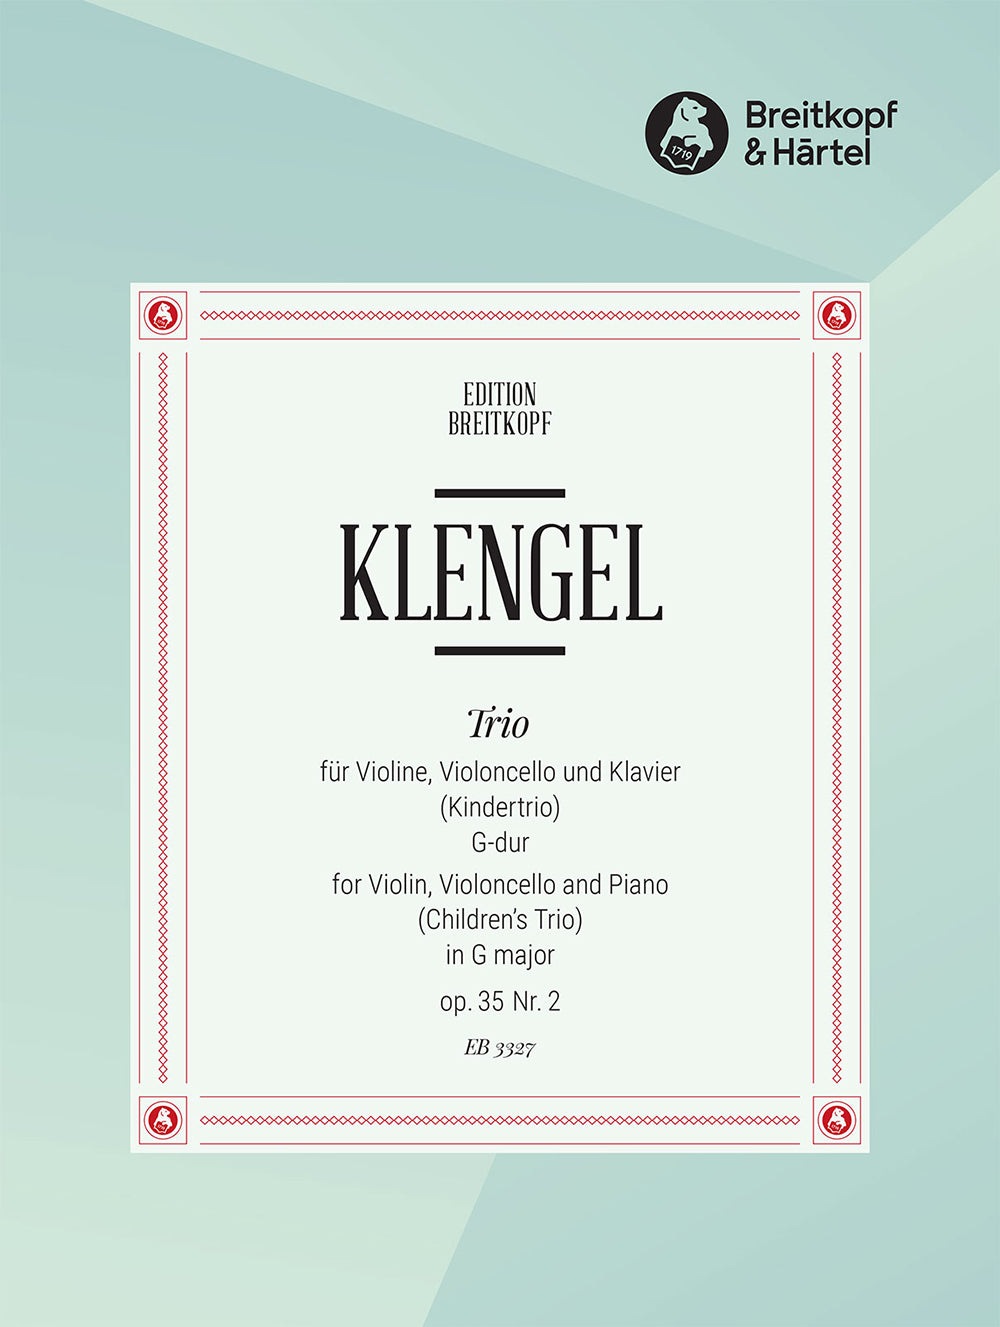 Klengel Children's Trio in G major Op. 35 No. 2